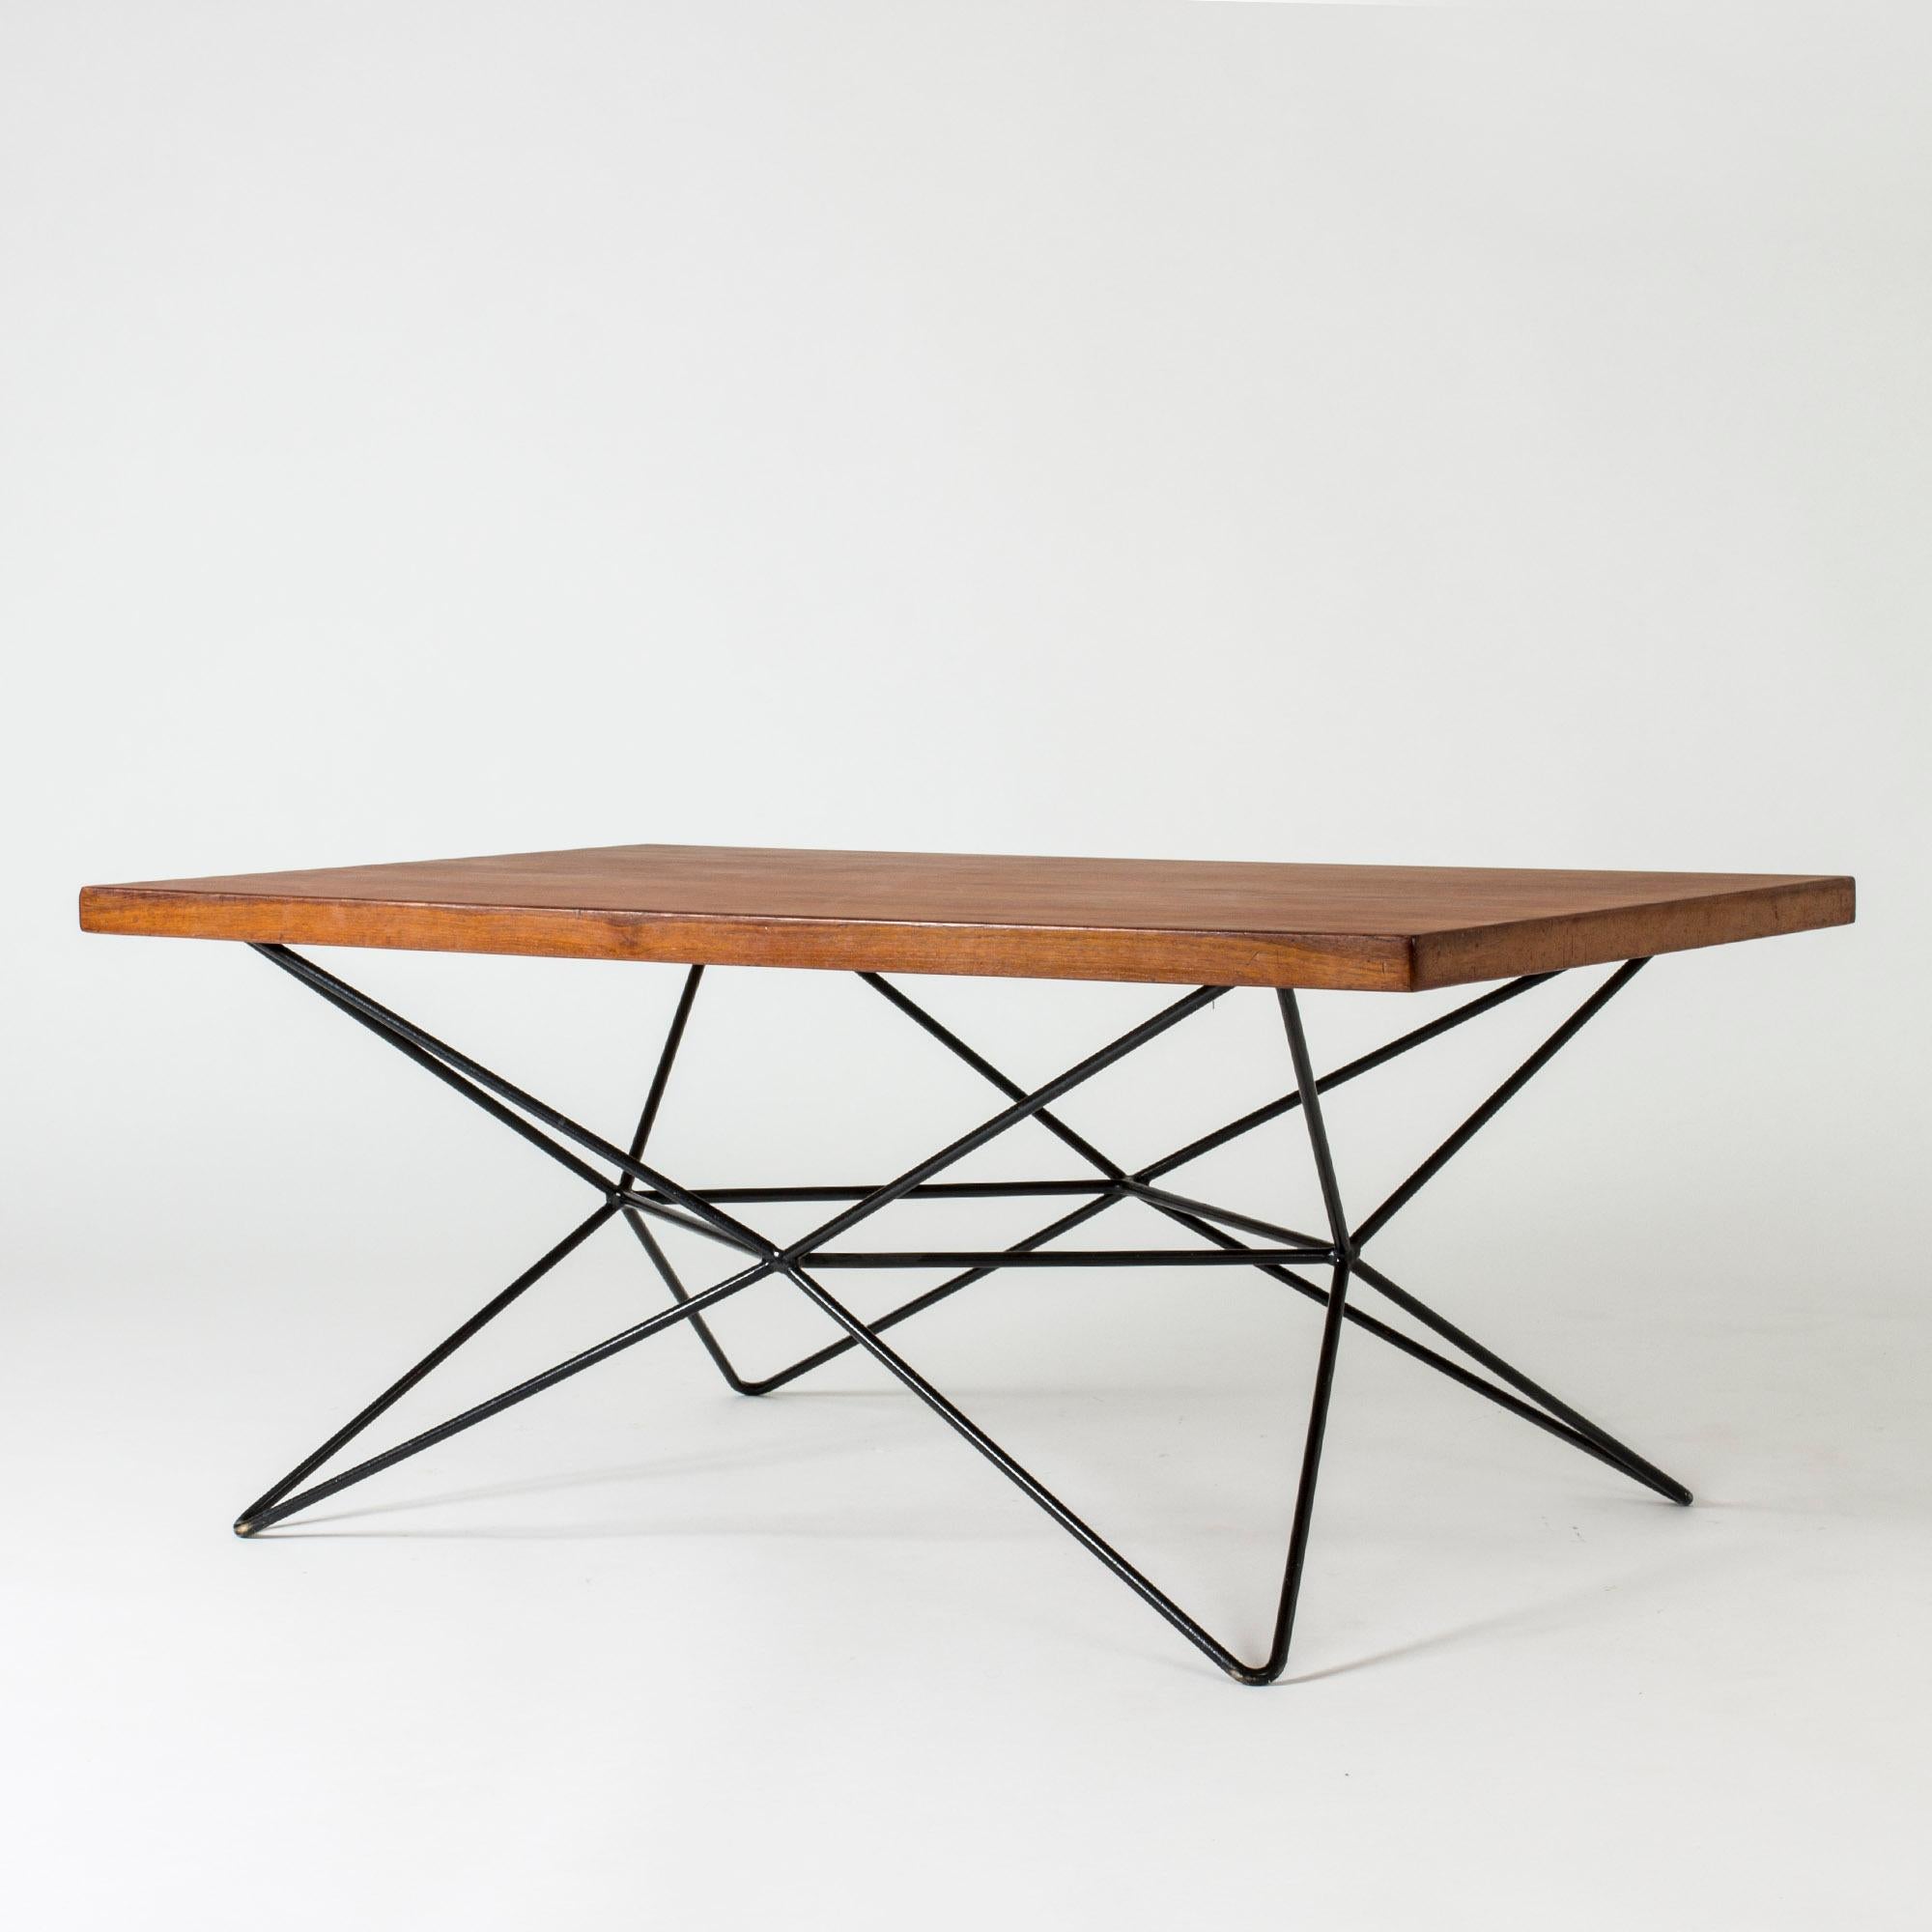 Table ingénieuse et saisissante de l'architecte Bengt Johan Gullberg qui peut être configurée en trois positions : table basse, table de salle à manger et table de bar. La base en métal laqué est tournée à différents endroits pour s'adapter aux